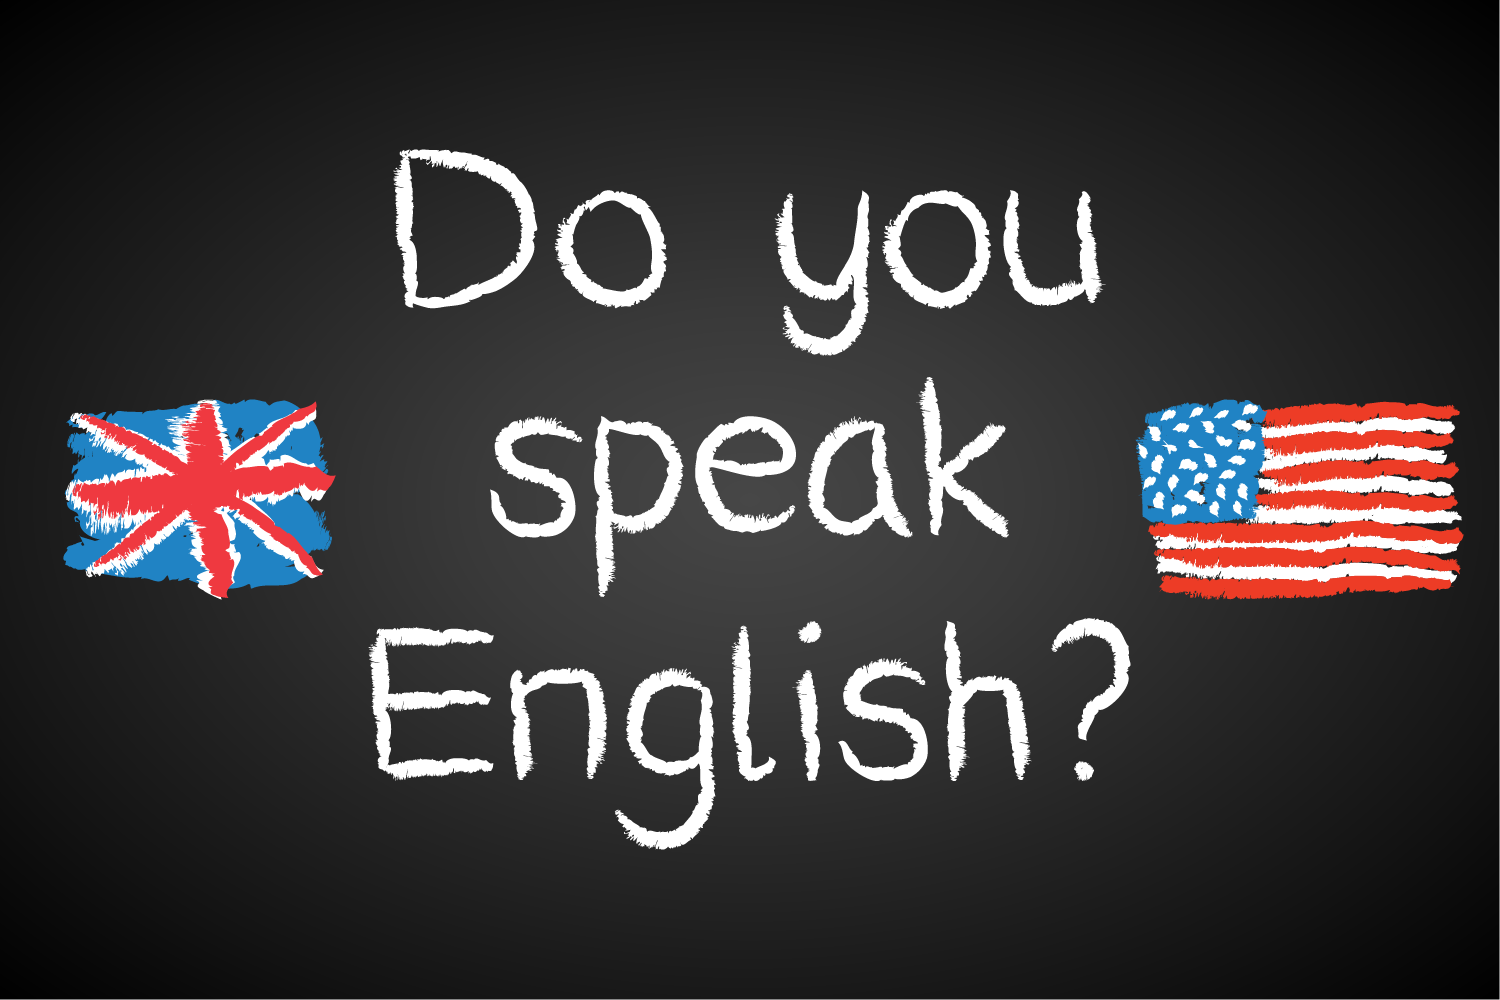 Do you don t speak english. Английский язык. Английский do you speak English. Do you speak English надпись. Плакат do you speak English.